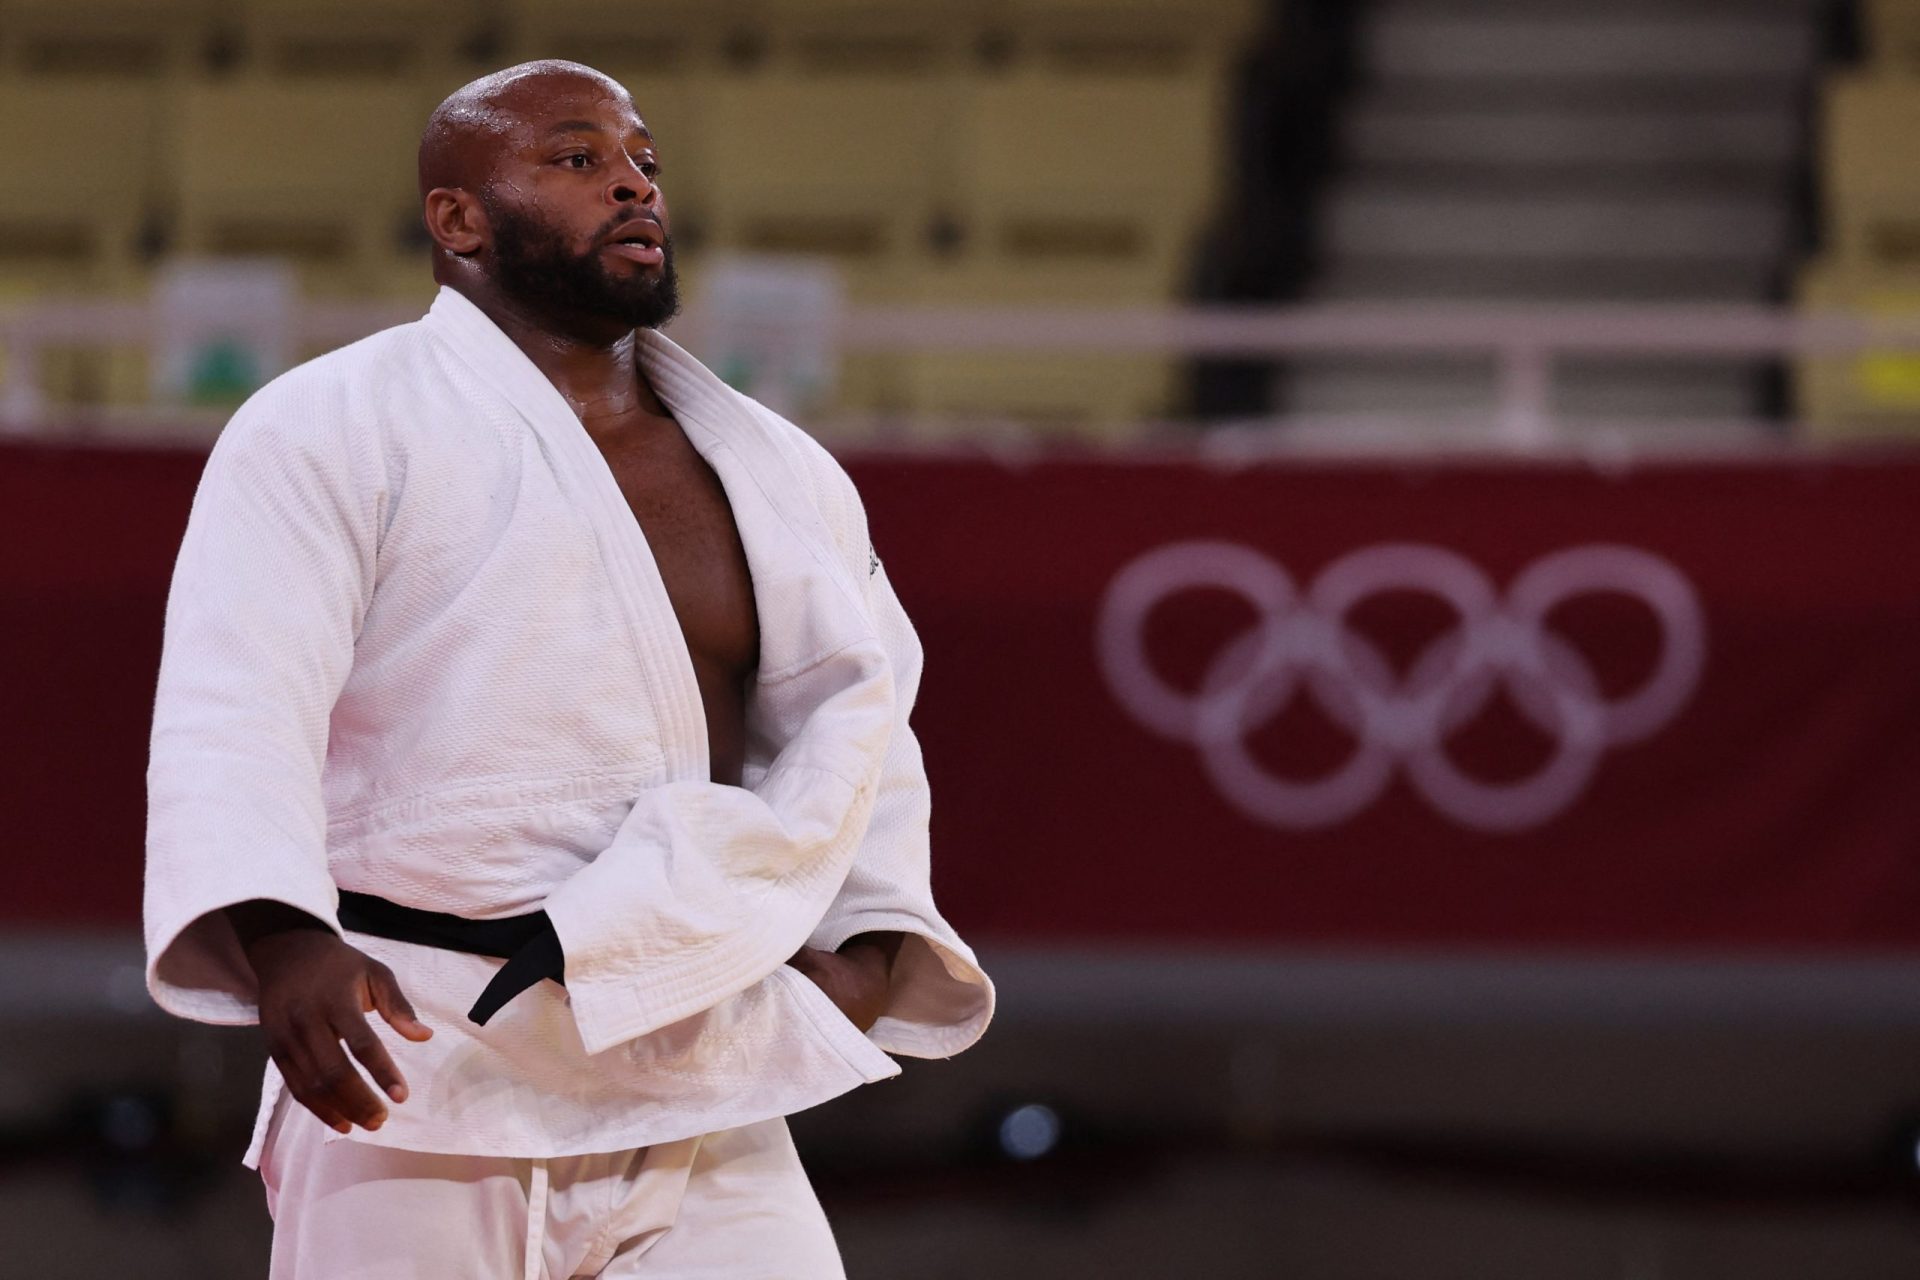 Judoca Jorge Fonseca derrotado nas meias-finais e vai lutar pelo bronze olímpico